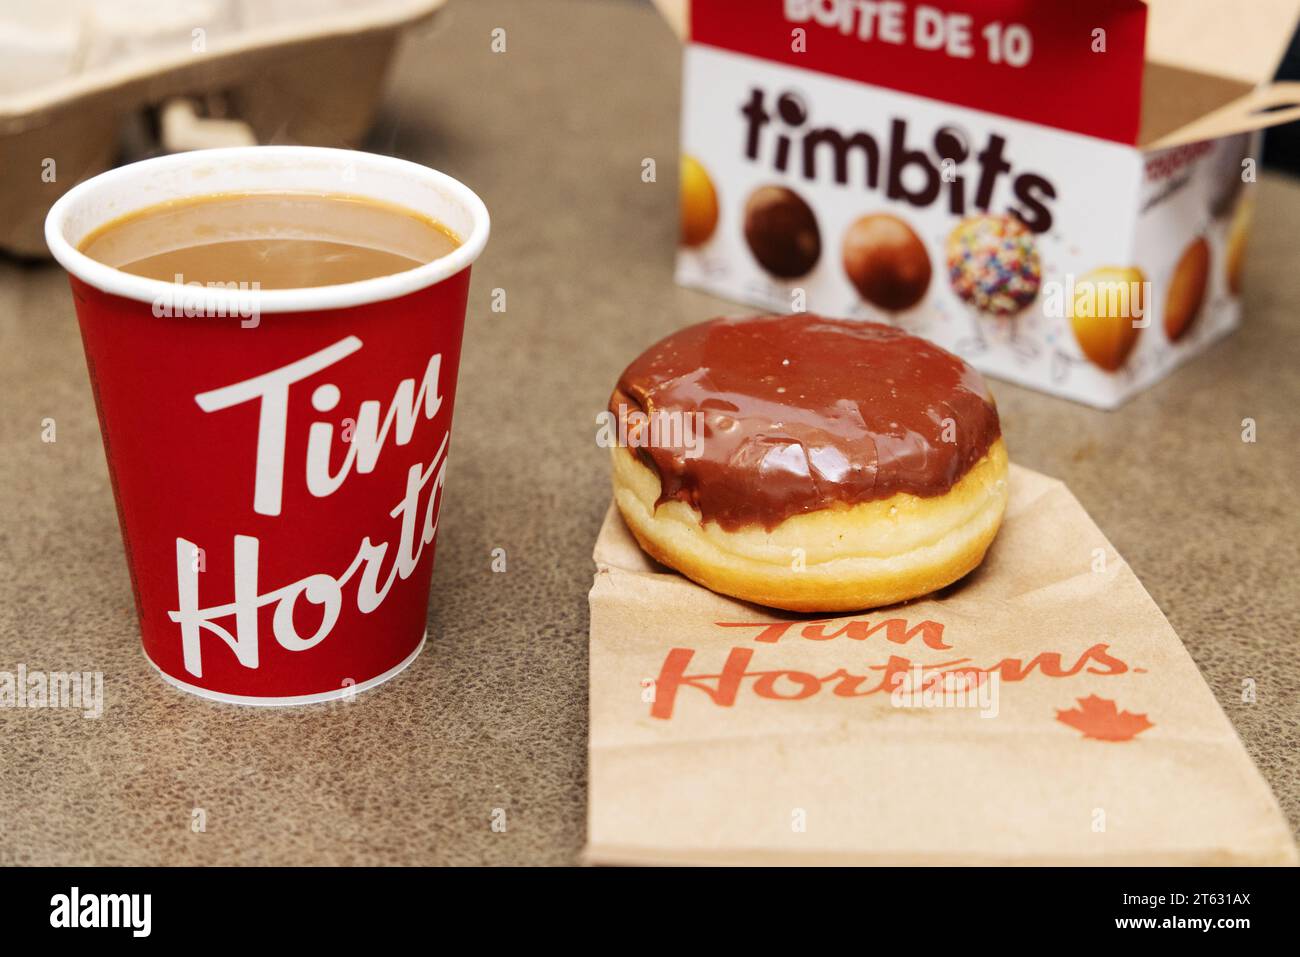 Café Tim Hortons, café et nourriture. Un café-restaurant canadien. Tasse à café, Timbits et beignet gros plan ; Halifax Nouvelle-Écosse Canada. Banque D'Images